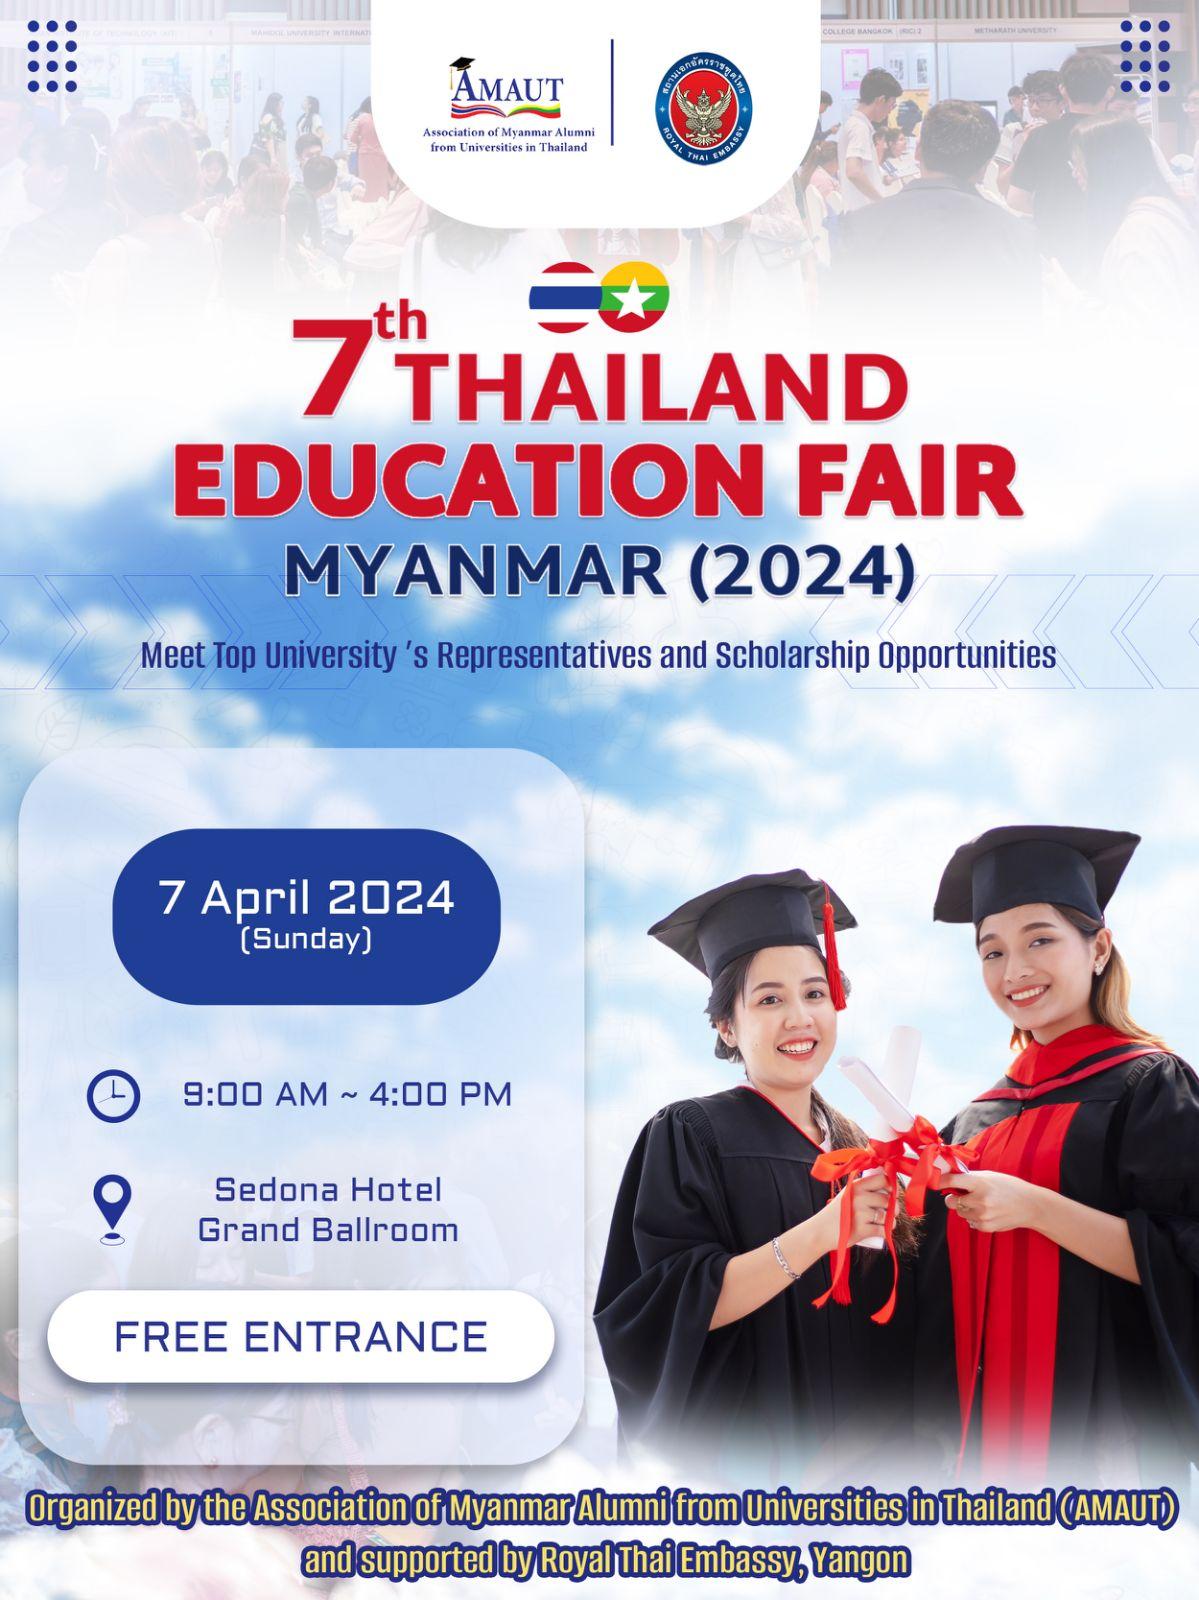 7th Thailand Education Fair (Myanmar) 2024 proposal